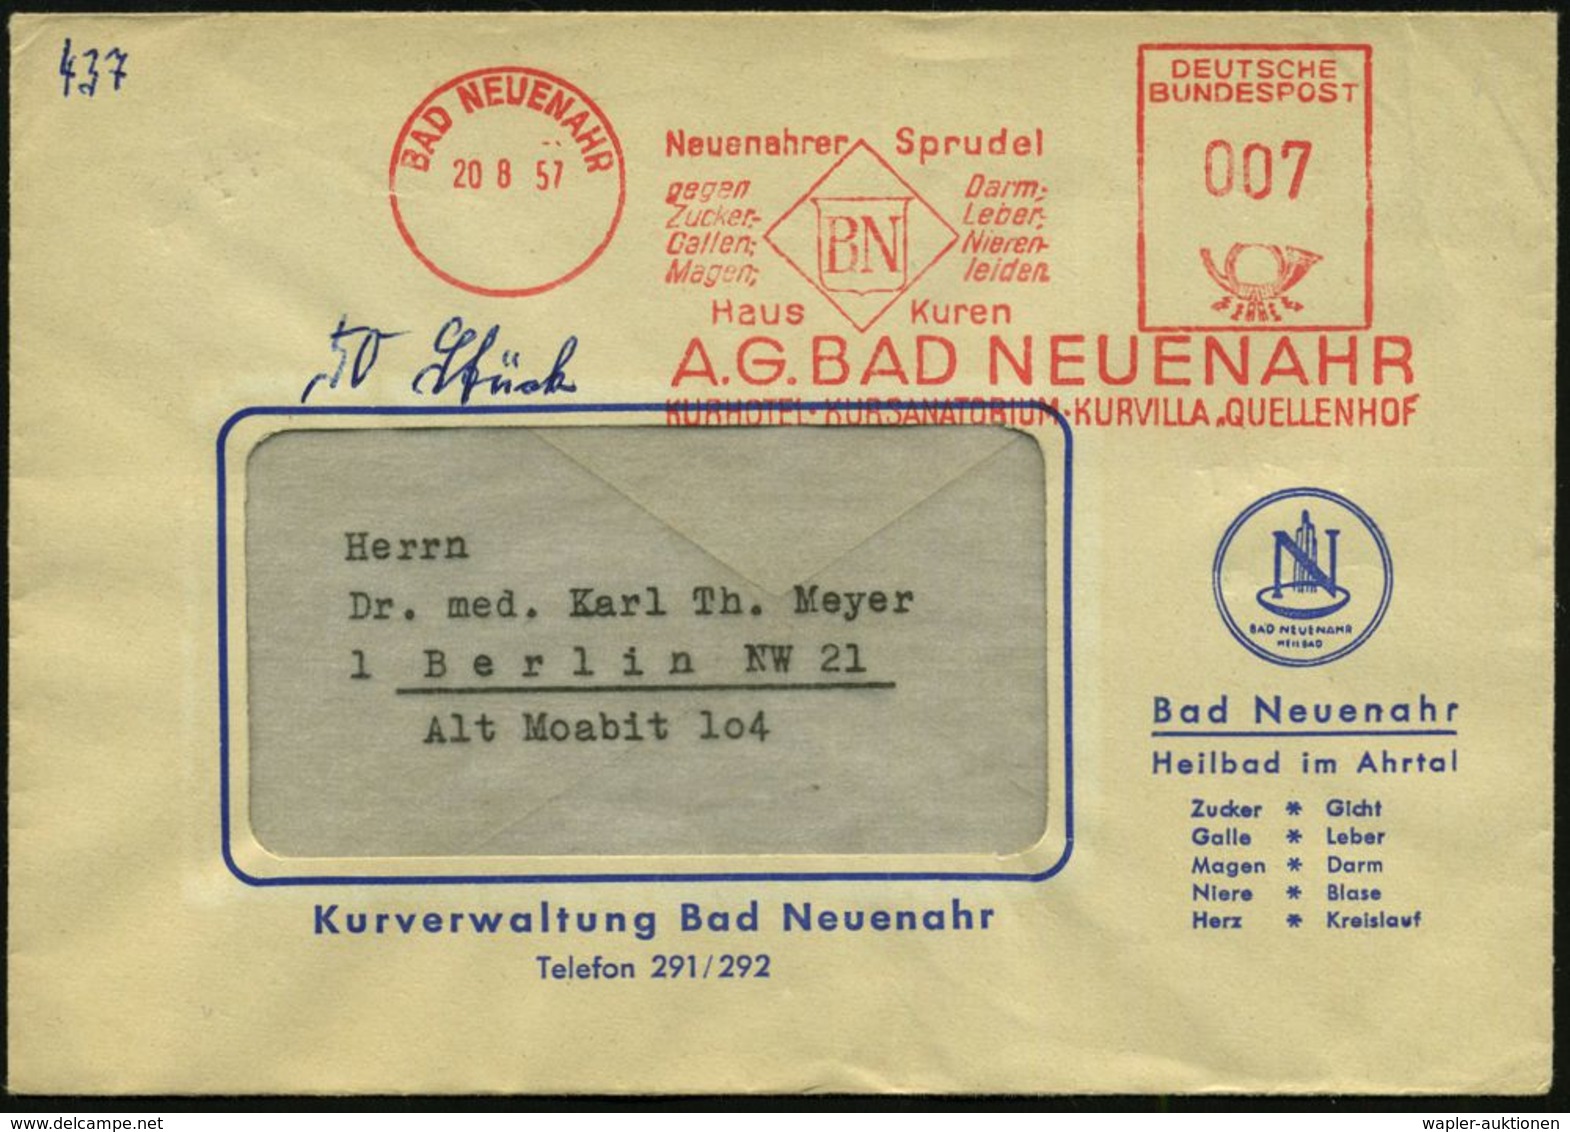 KRANKHEITEN : BAD NEUENAHR/ Neuenahrer Sprudel/ Gegen/ Zucker-/ Gallen-,Magen-,/ Darm..leiden 1957 (20.8.) Seltener AFS- - Maladies